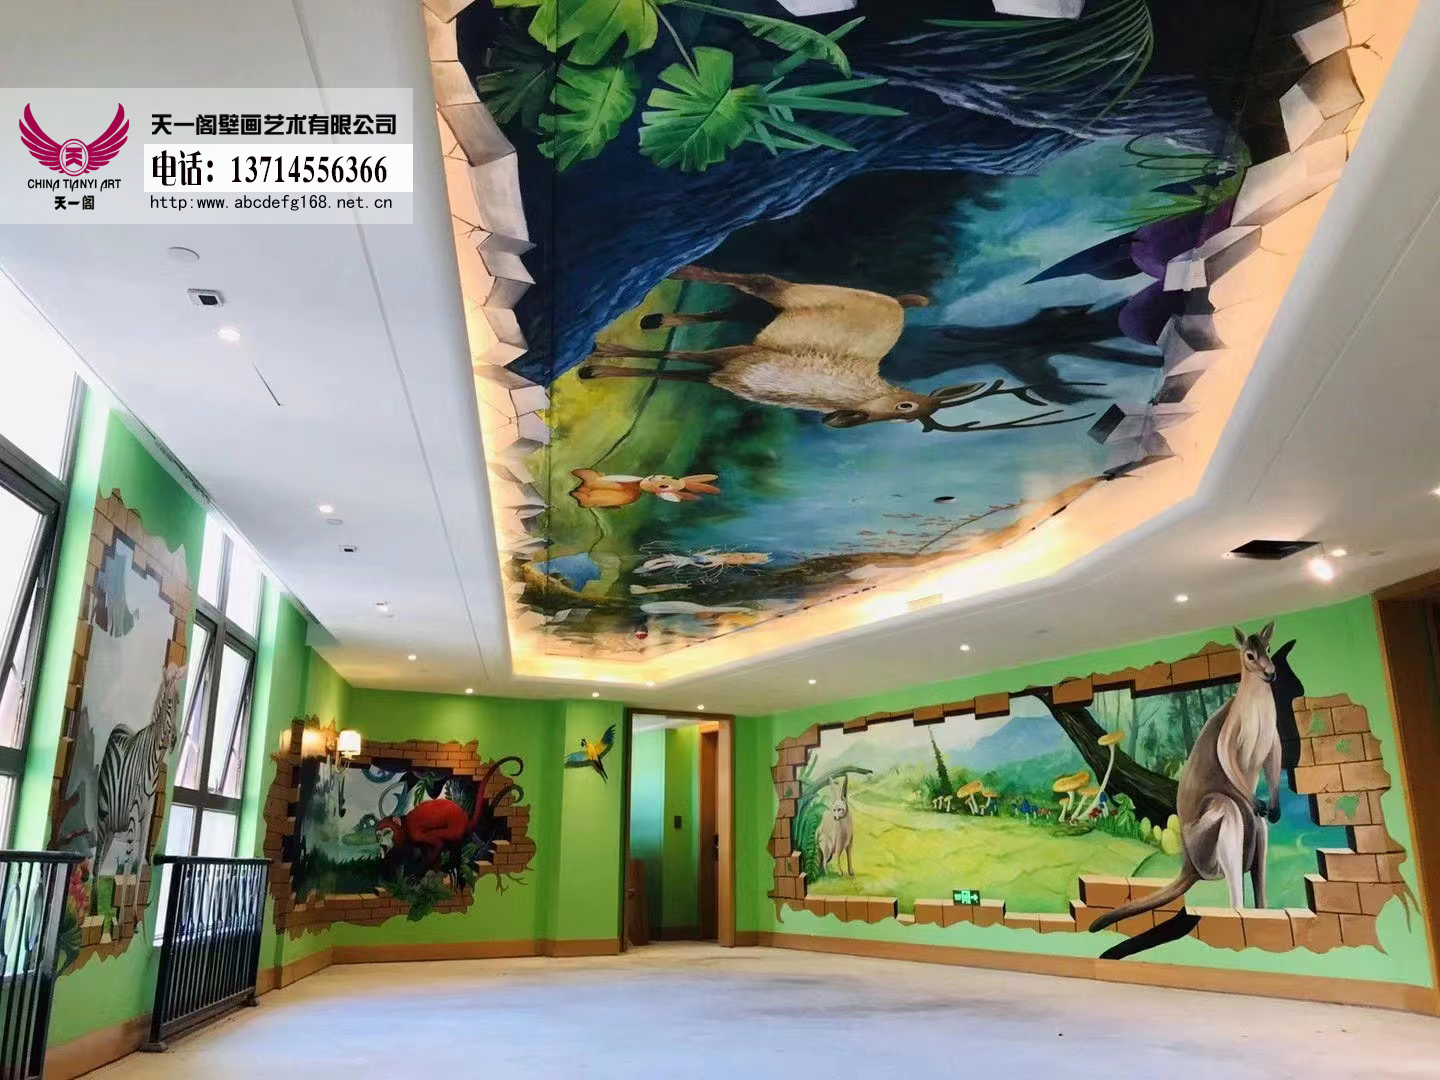 恒大海花岛七星级欧堡酒店3D壁画原创